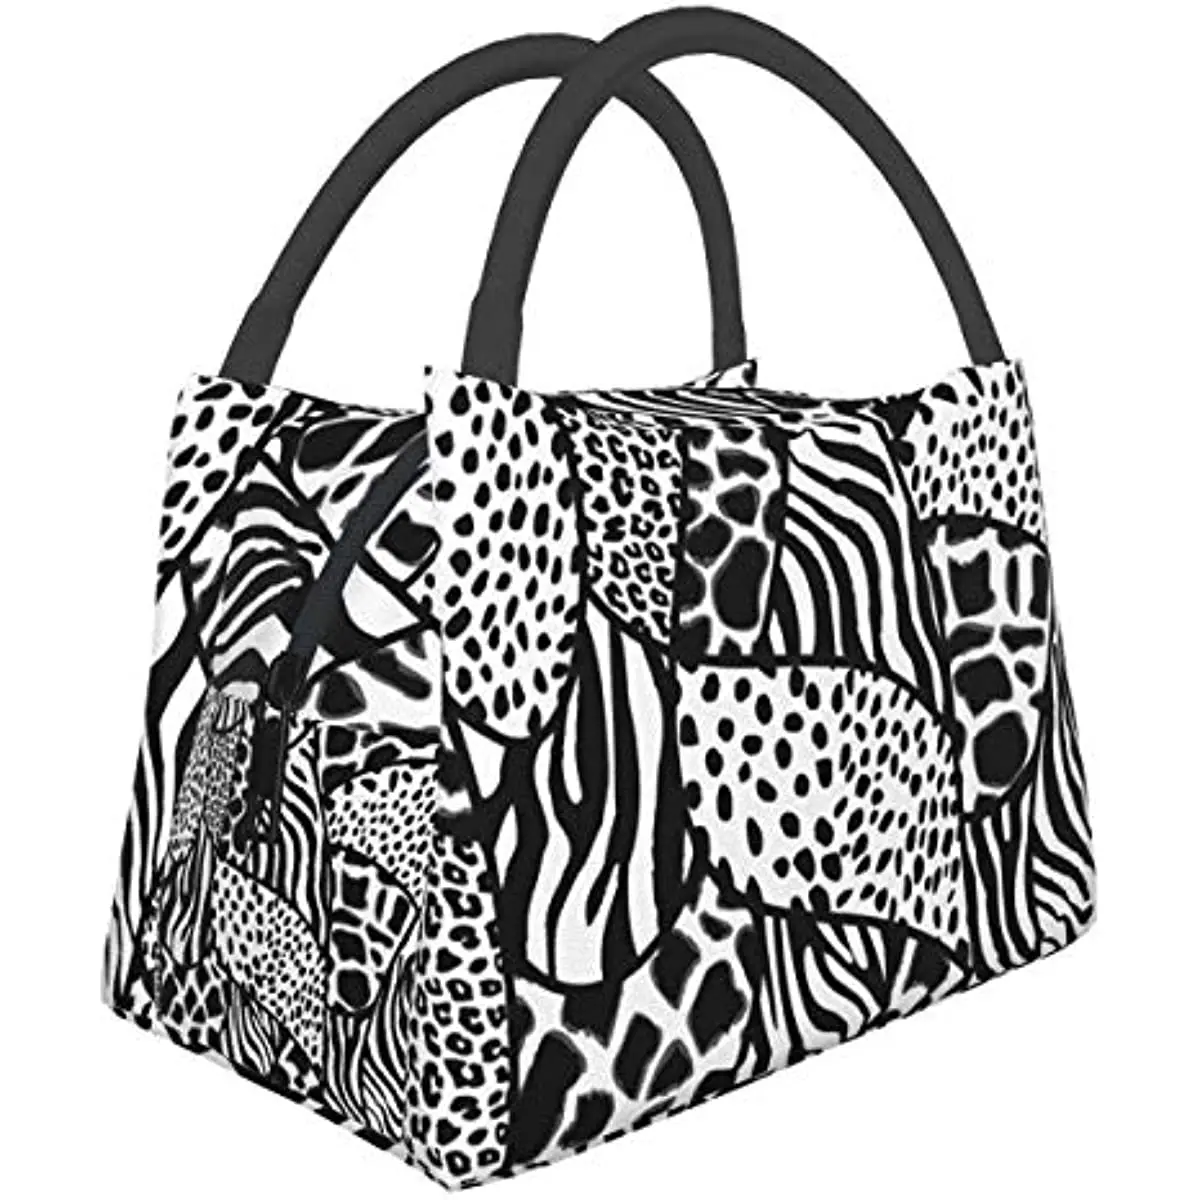 

Сумка для ланча с принтом зебры, сумка-тоут, сумка для ланча для мужчин и женщин, Ланч-бокс, многоразовый изолированный контейнер для ланча, рабочая сумка или путешествия